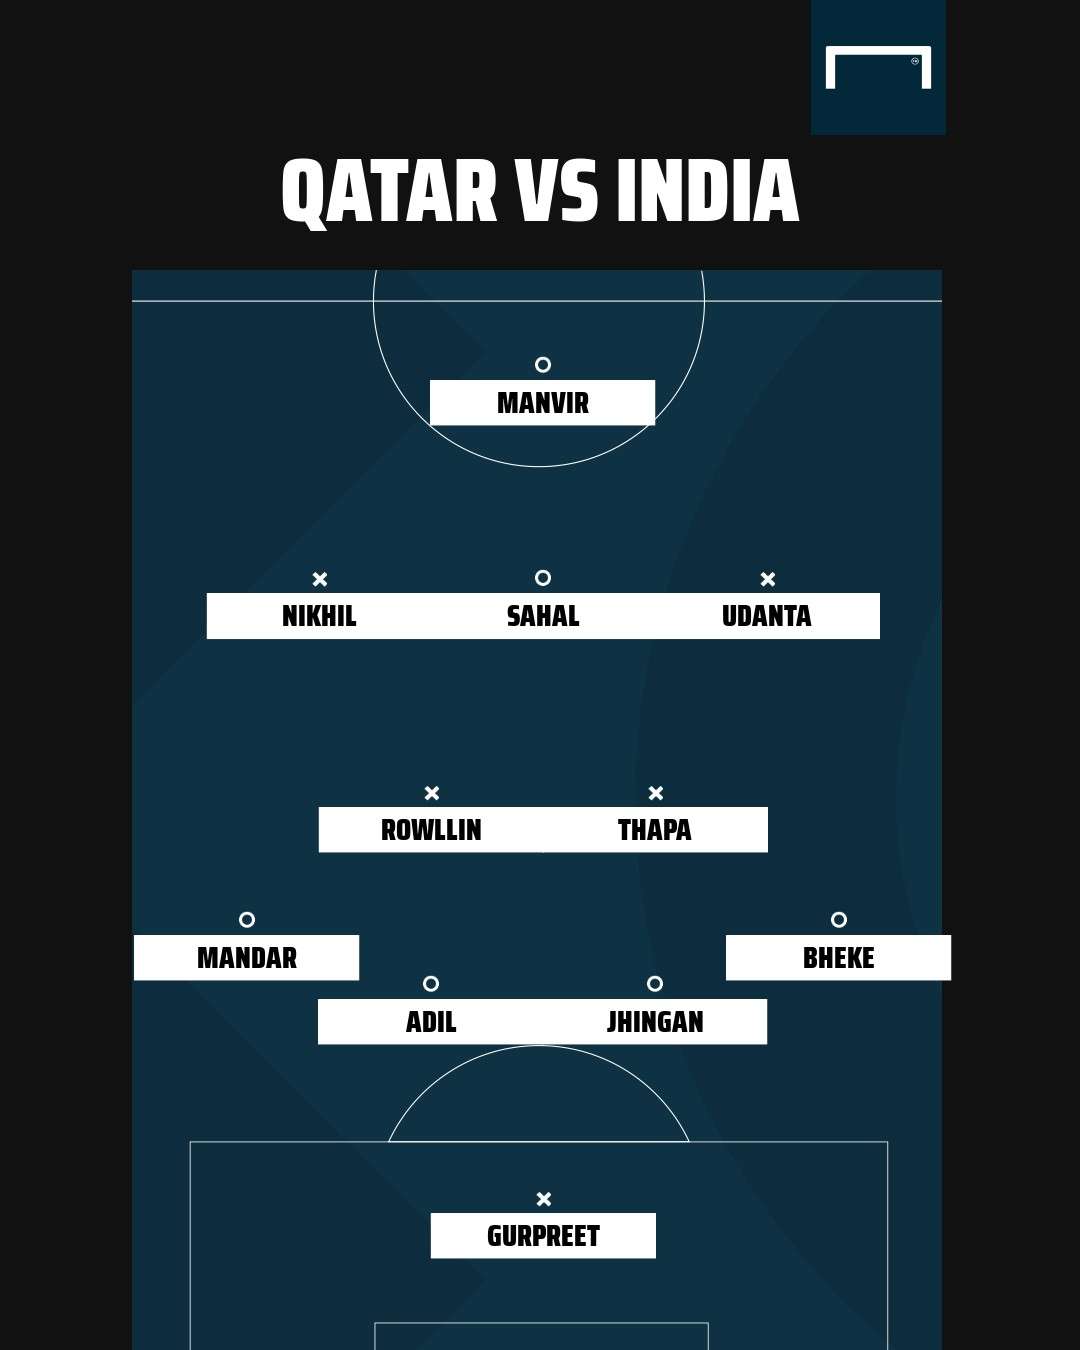 Qatar vs India